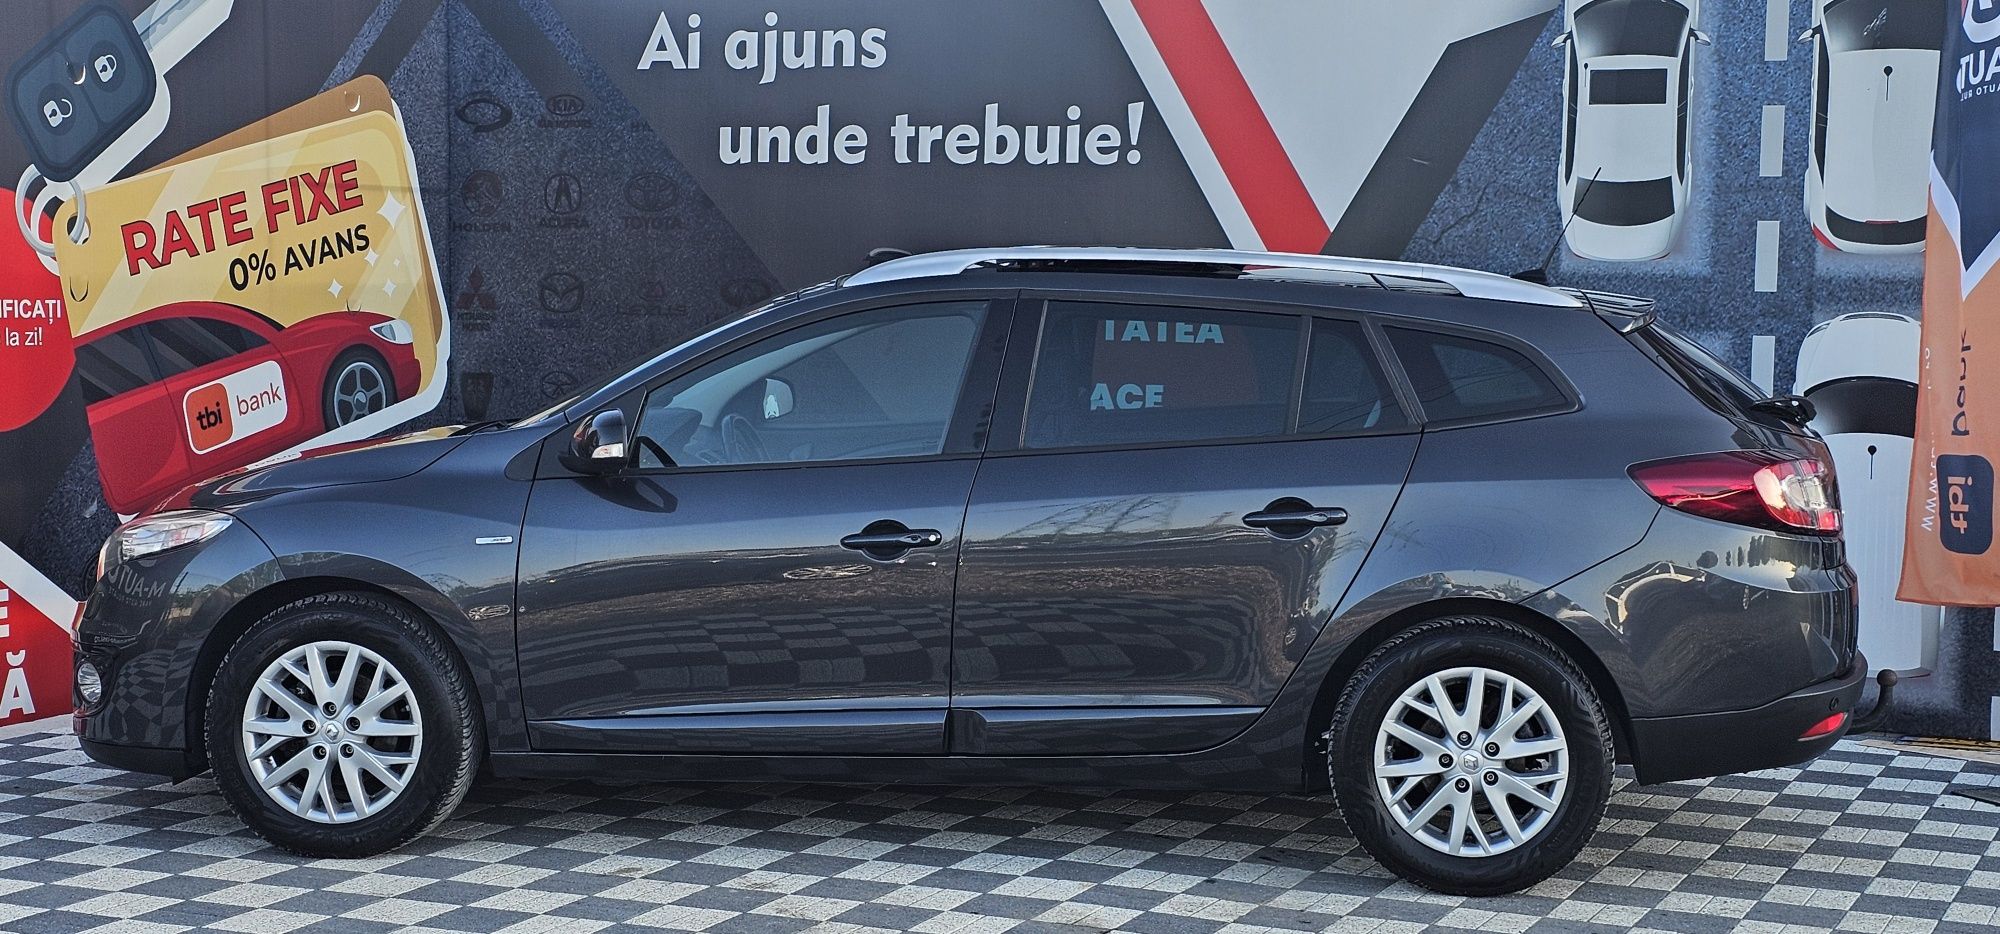 Renault Megane BOSE 2013 1.5dci panoramic navi xenon Garantie Rate Liv